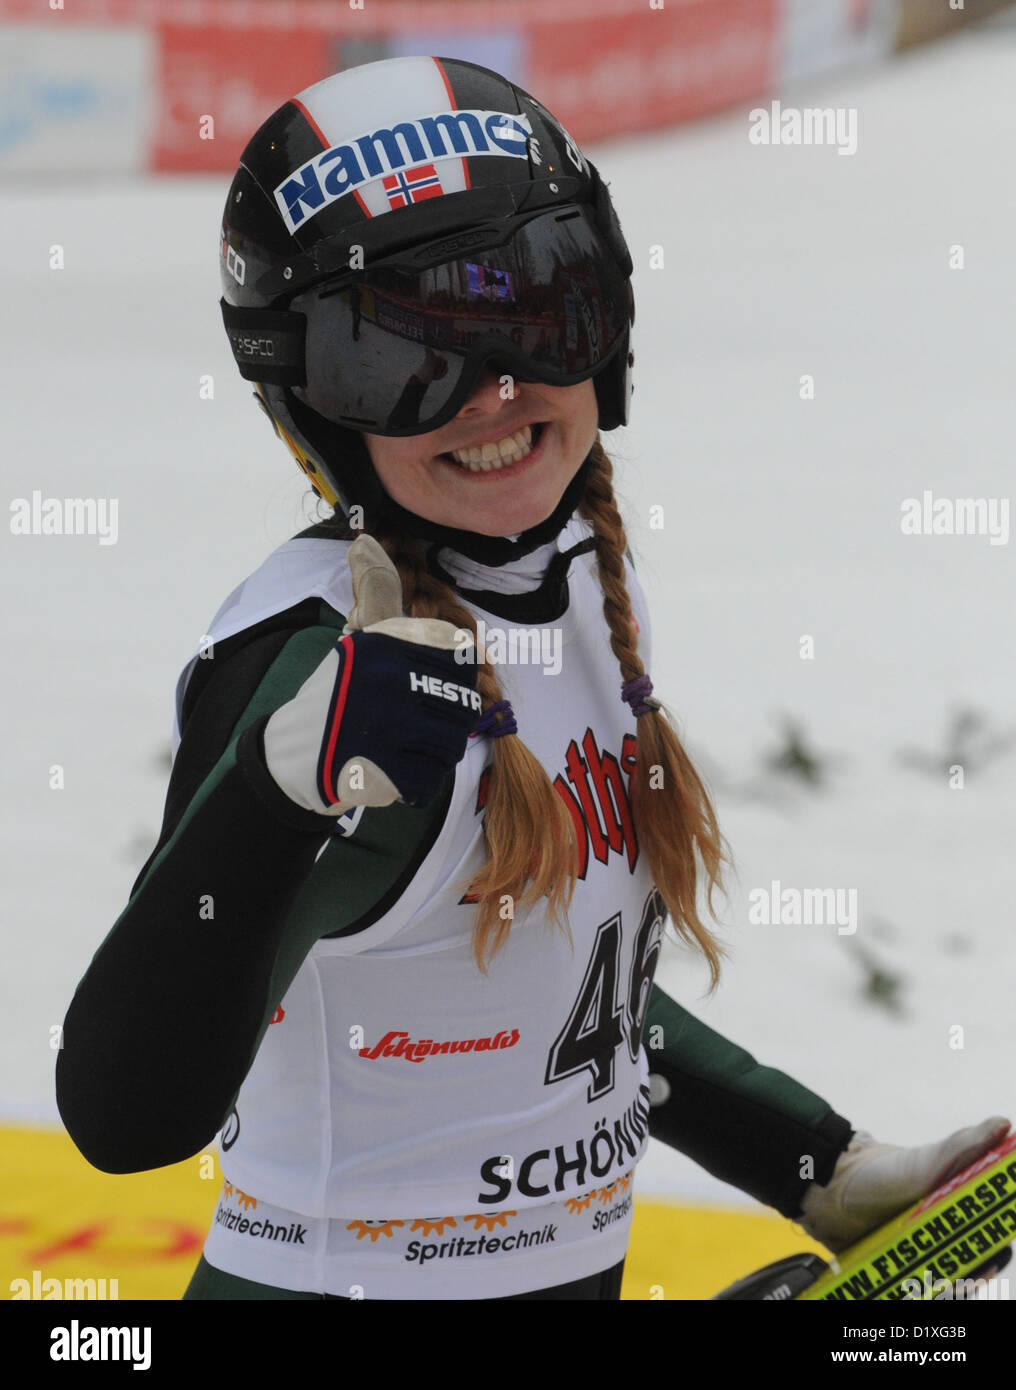 Norvegese ponticello sci Anette Sagen cheers al traguardo dopo il secondo round dal Langenwaldschanze delle donne ski-jumping di Coppa del Mondo a Schonach, Germania, 06 gennaio 2013. Ha vinto il primo posto. Foto: Patrick Seeger/dpa Foto Stock